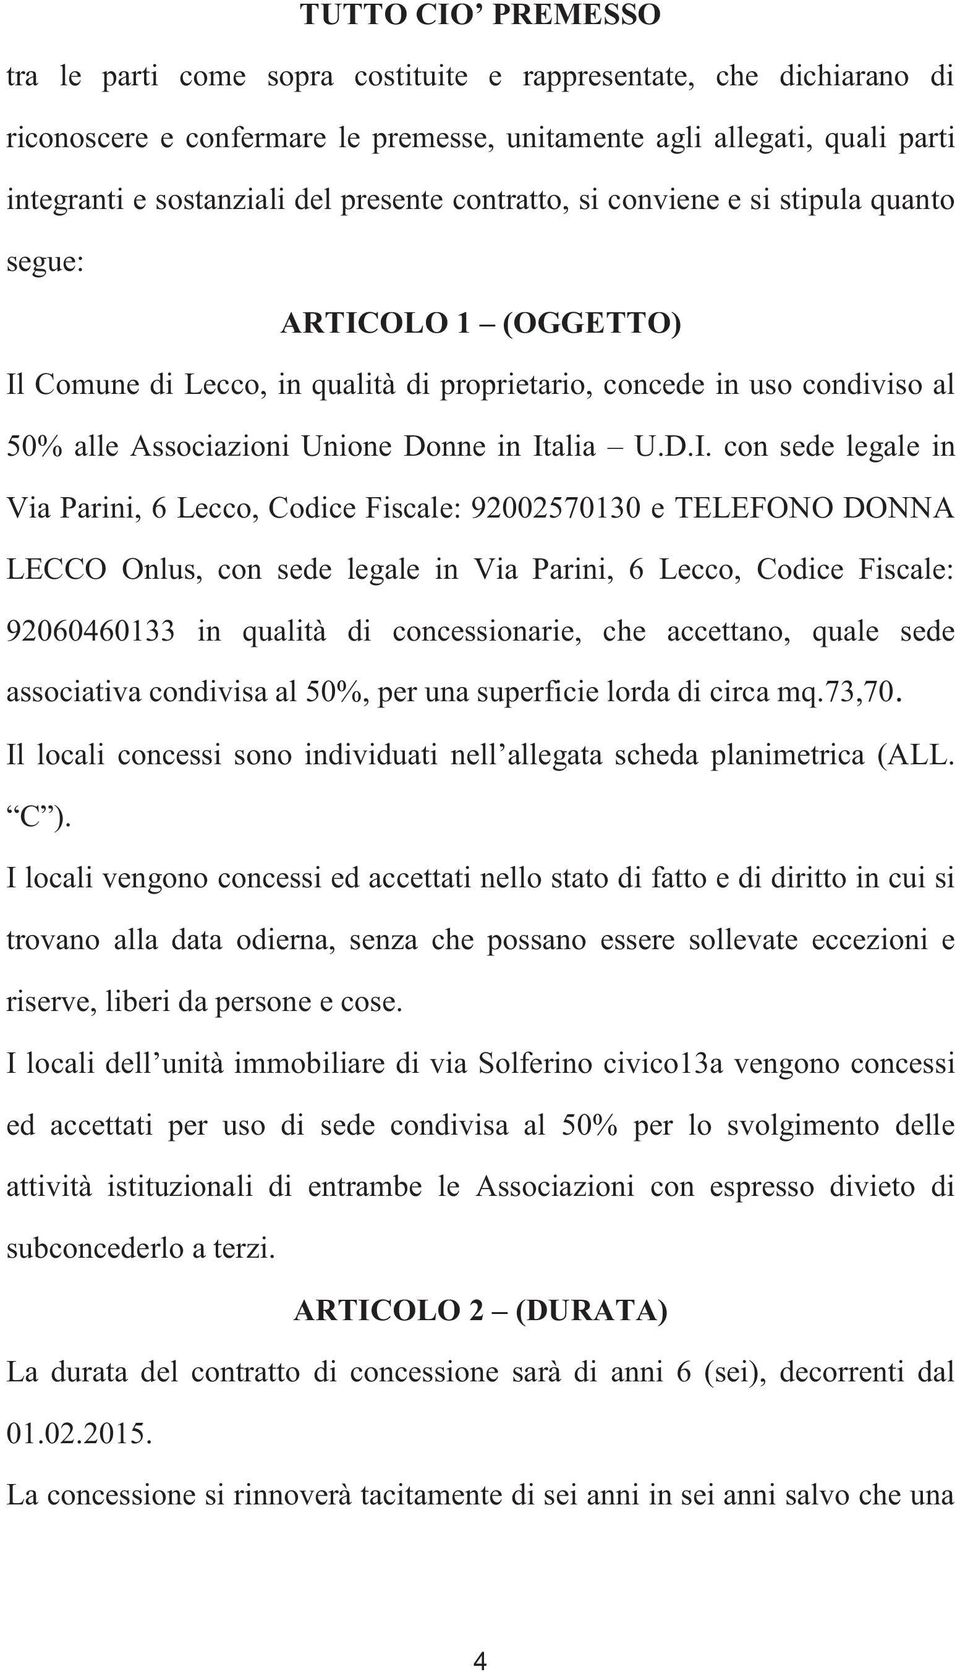 Italia U.D.I. con sede legale in Via Parini, 6 Lecco, Codice Fiscale: 92002570130 e TELEFONO DONNA LECCO Onlus, con sede legale in Via Parini, 6 Lecco, Codice Fiscale: 92060460133 in qualità di